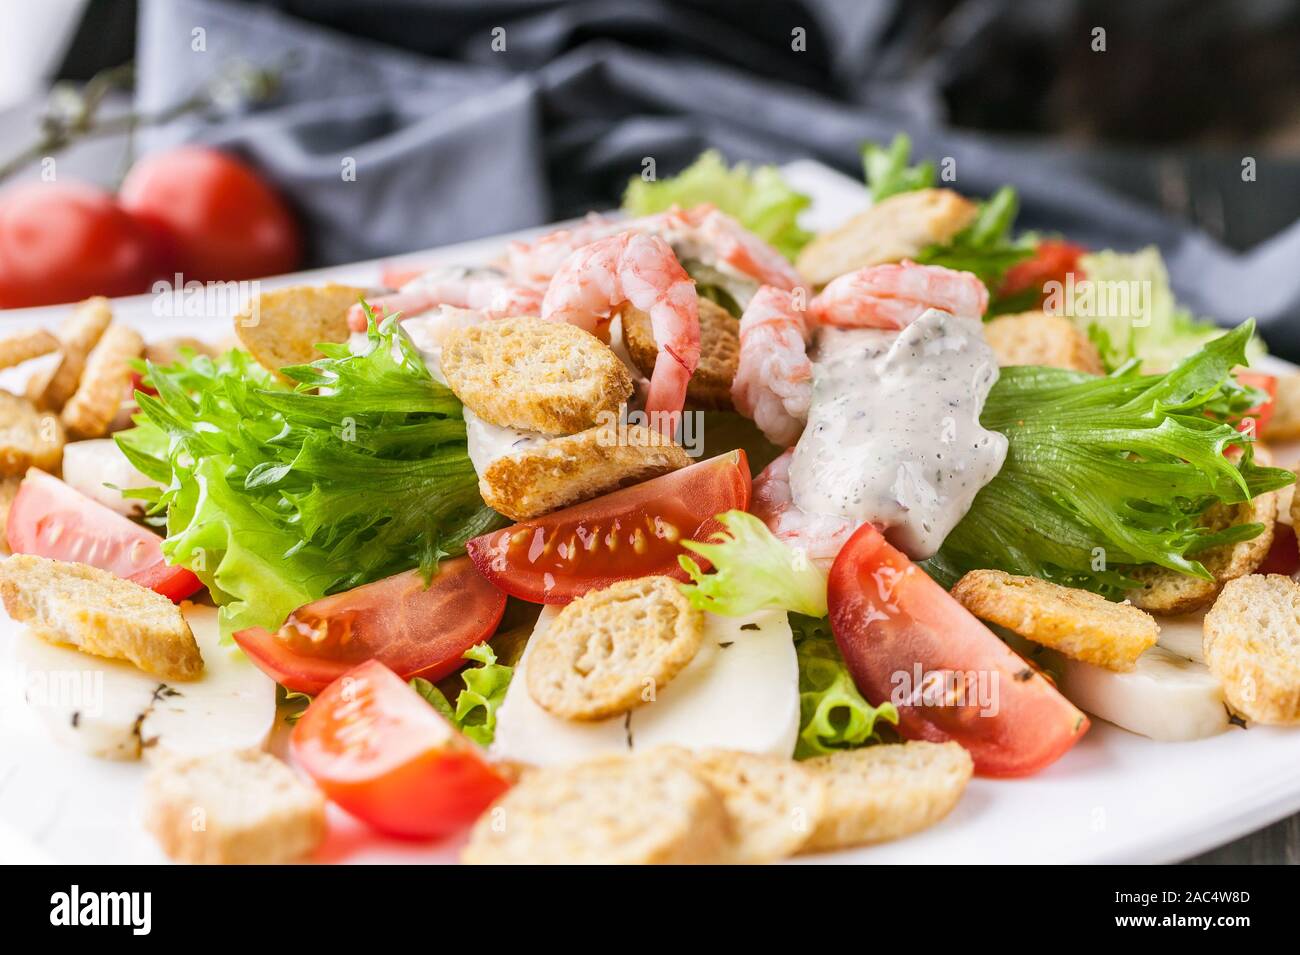 Close-up appétissante salade avec crevettes, laitue, fromage, avocat et craquelins sur une plaque blanche. Recettes de fruits de mer délicieux et sains. Peu de calories Banque D'Images